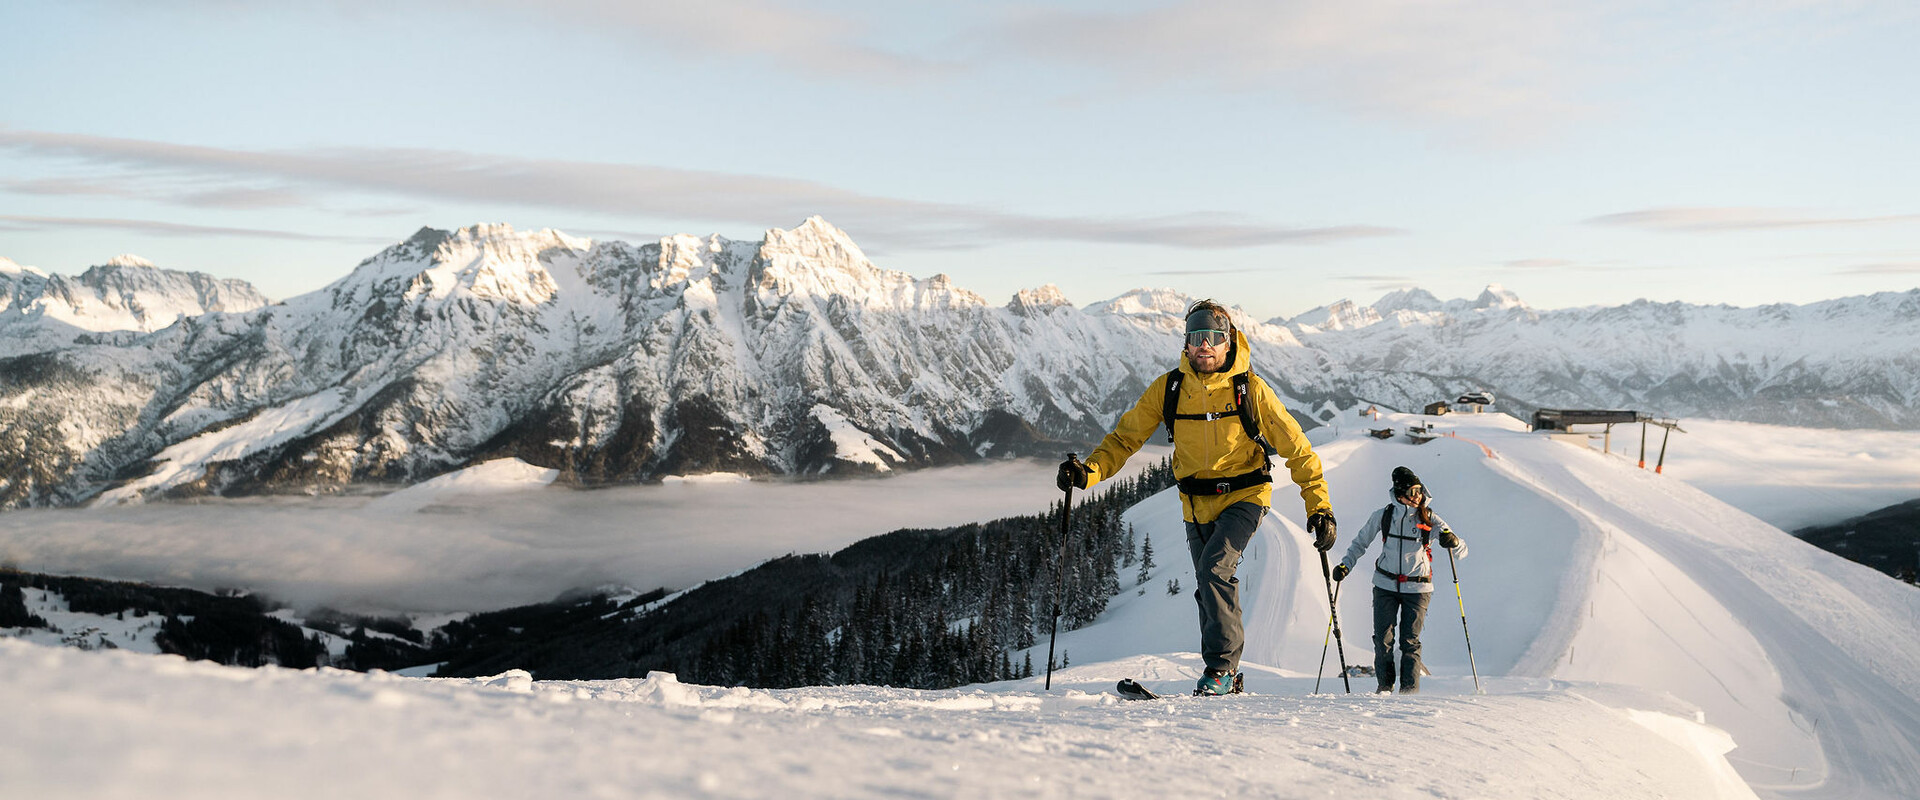 Skitourengeher vor Bergpanorama in Saalfelden Leogang im Winter | © Moritz Ablinger